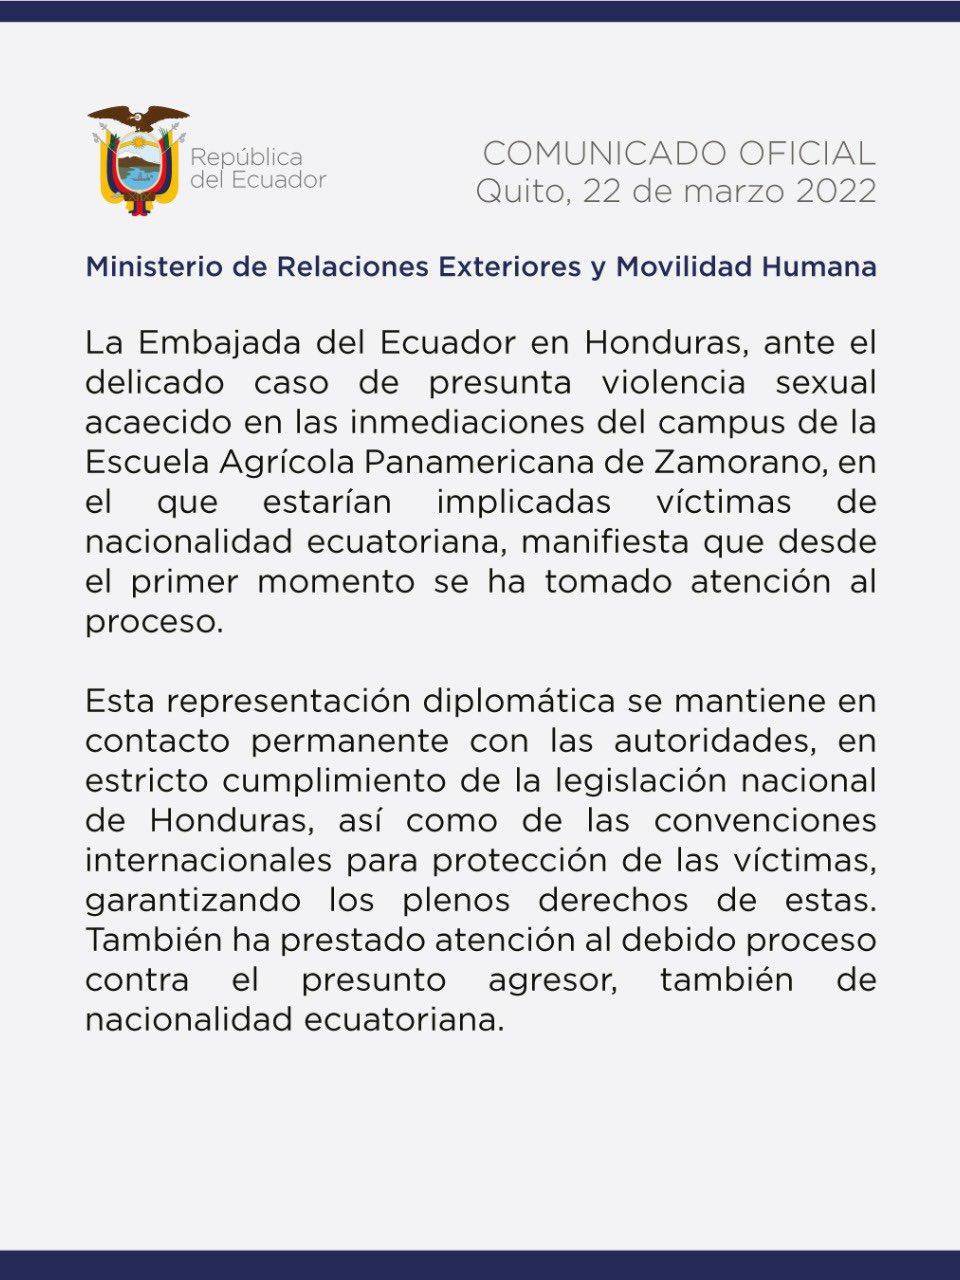 Embajada de Ecuador reacciona a denuncia de violación en El Zamorano